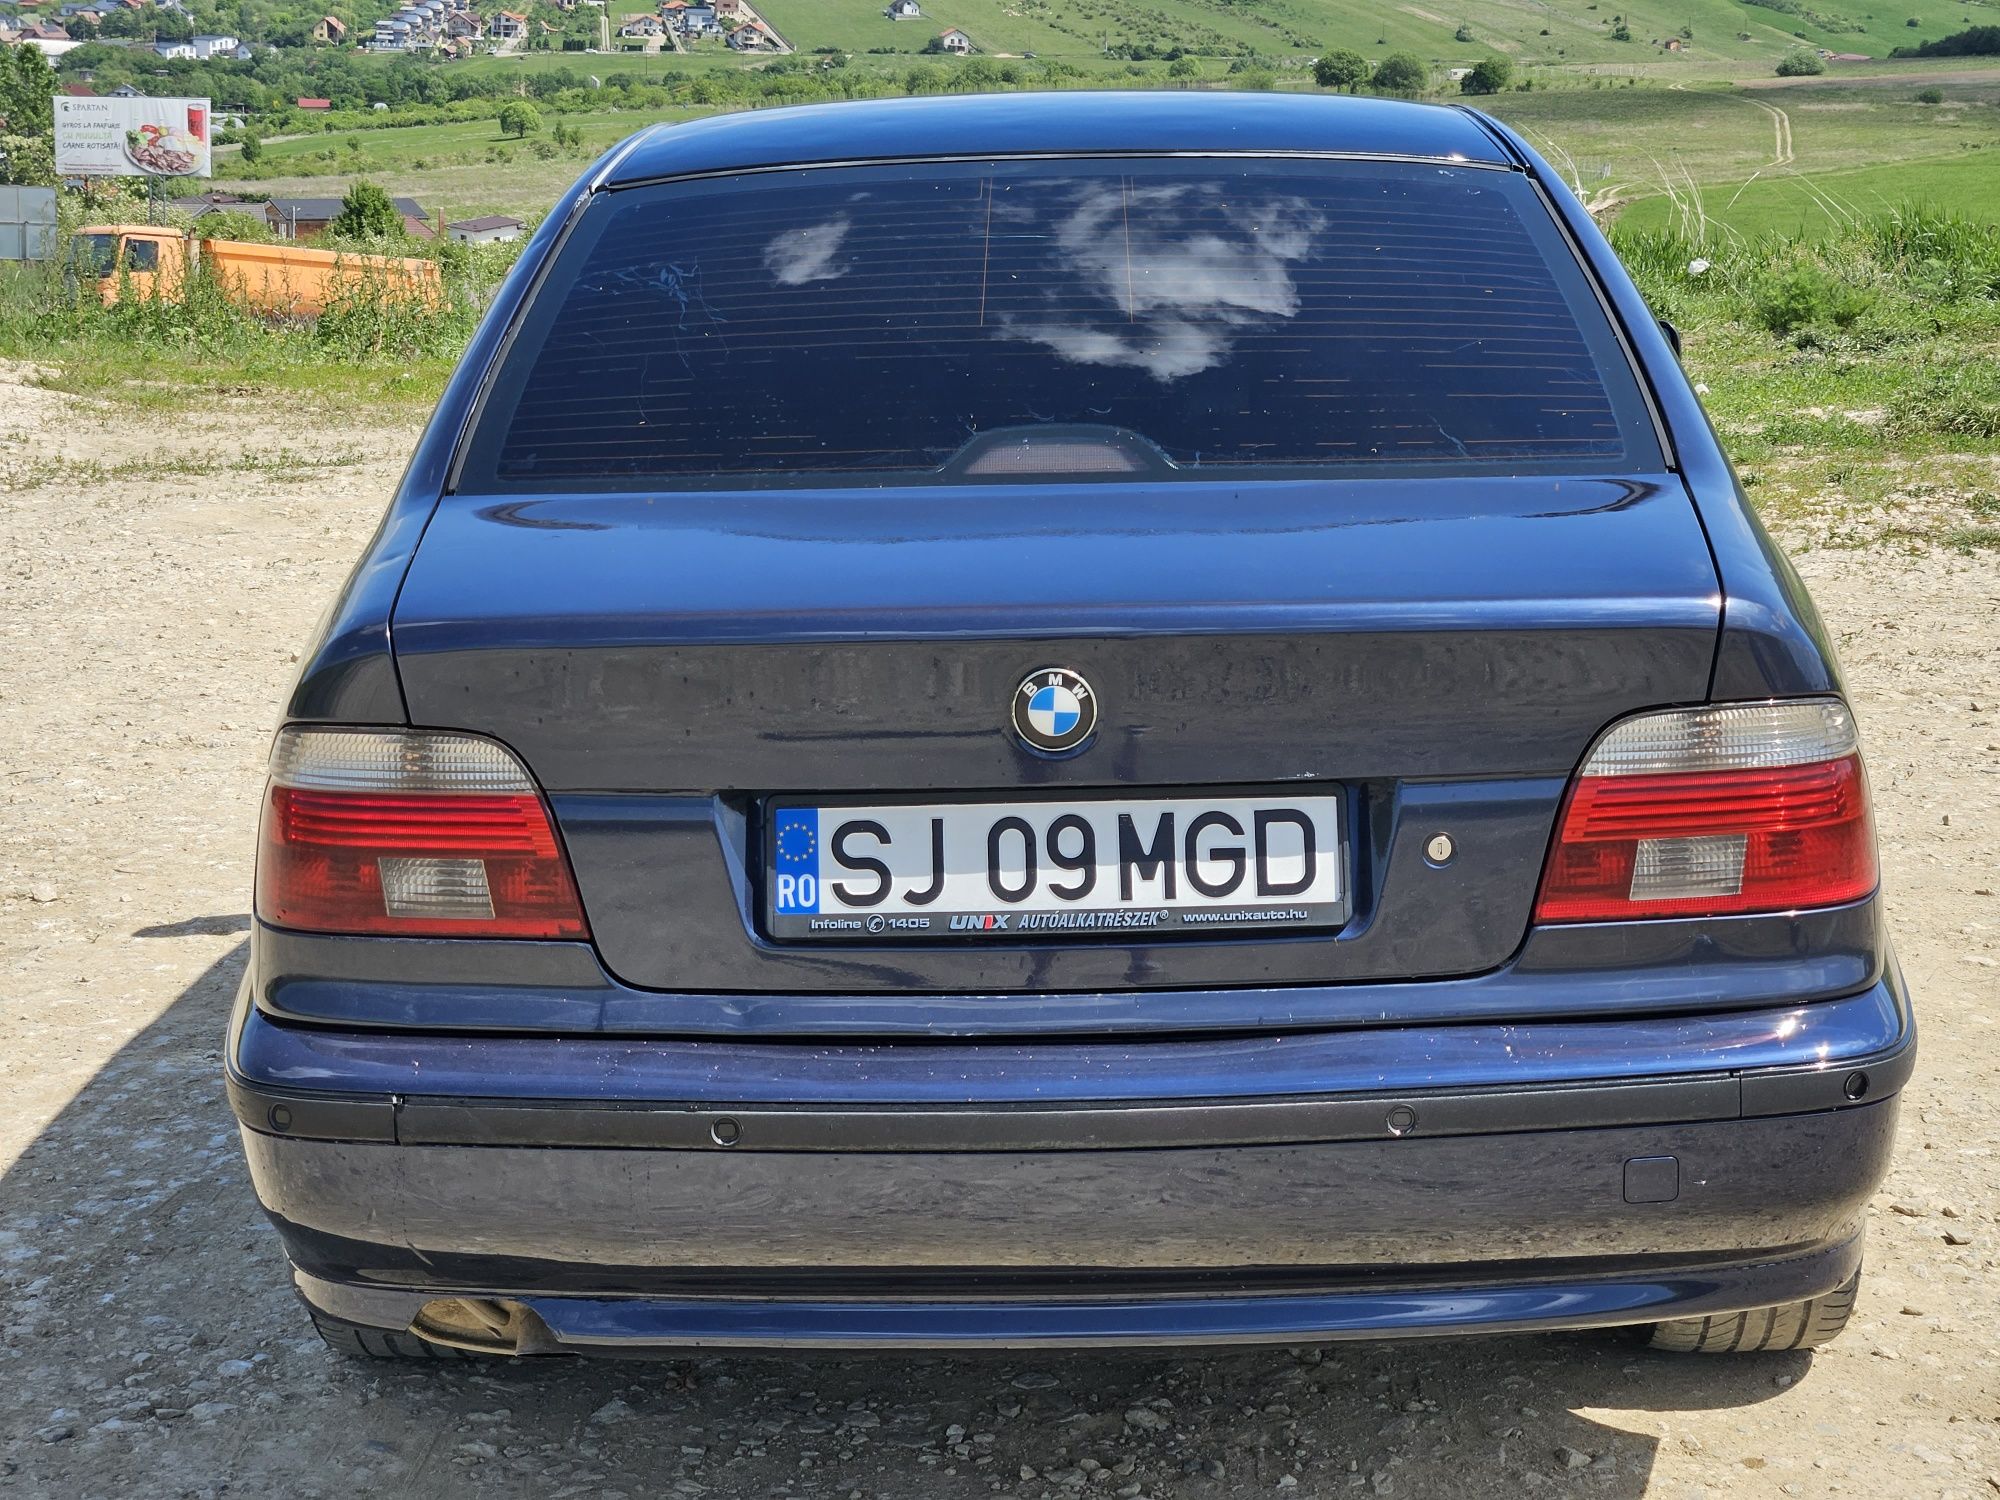 Vând BMW Seria 5 E39 2.5 diesel